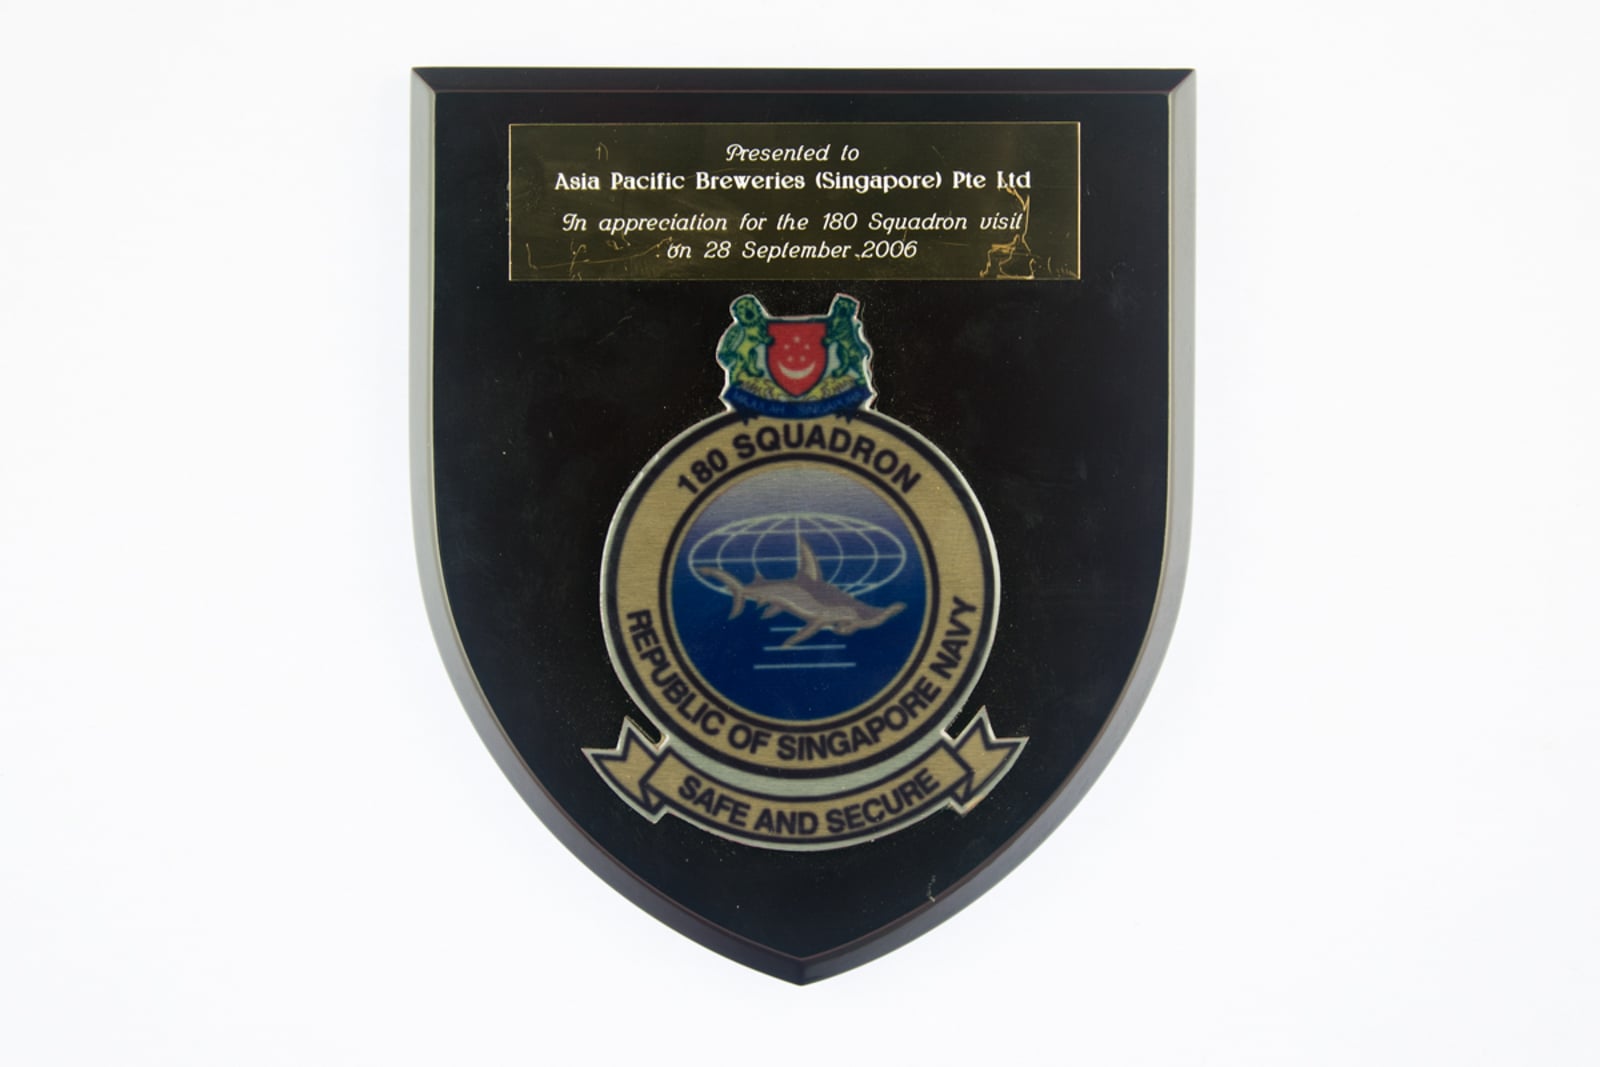 180 Squadron Republic of Singapore Plaque 2006